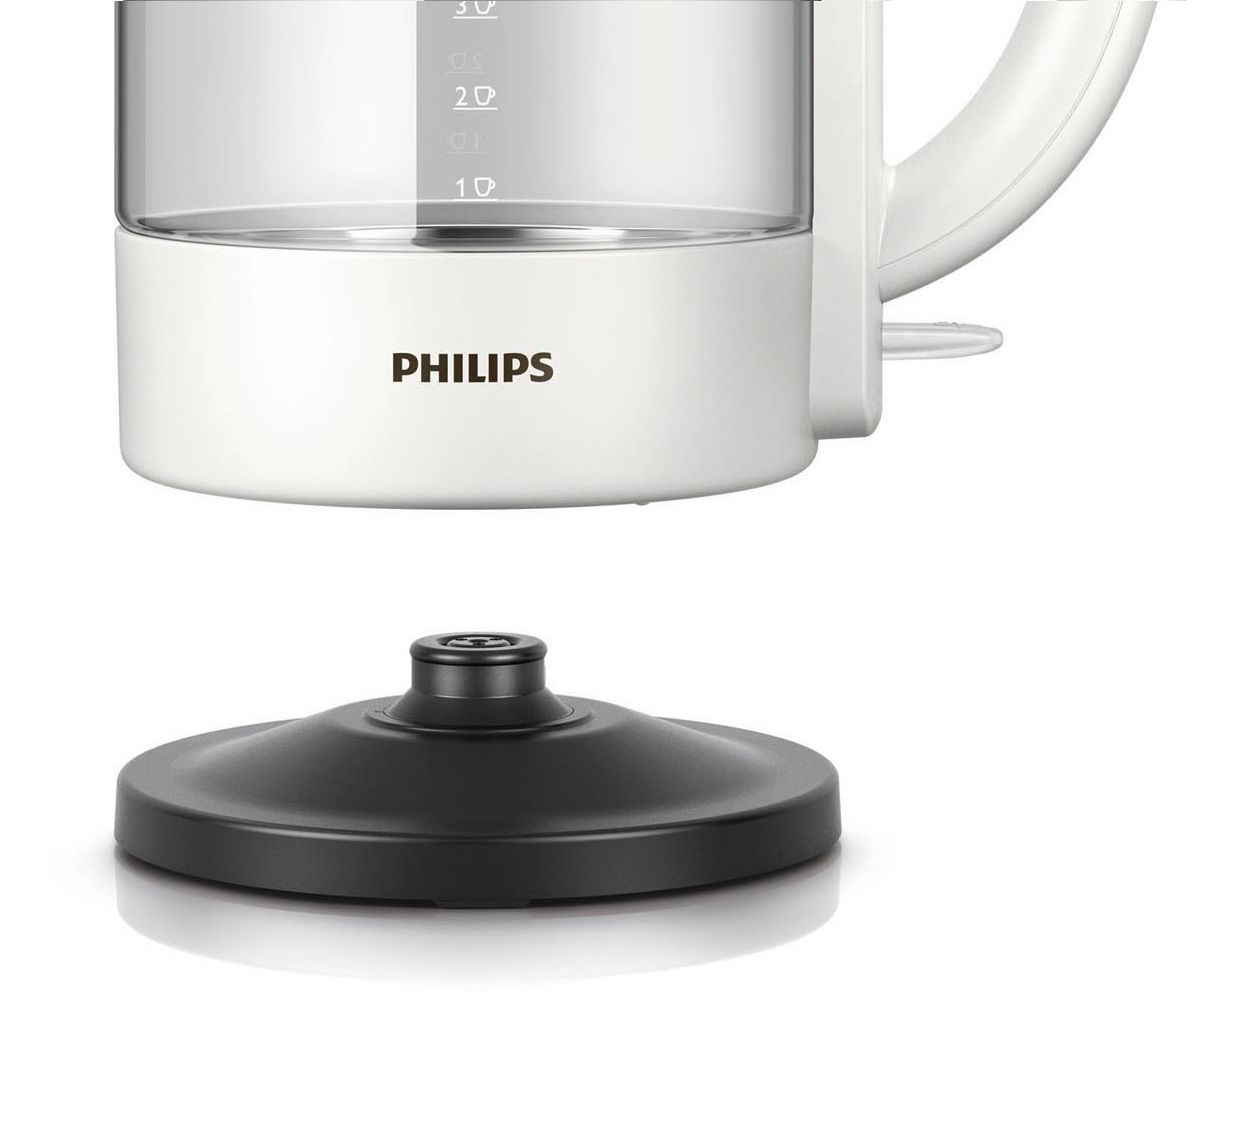 Стекло филипс. Philips hd9340. Philips hd9340/90. Филипс hd9316. Стеклянный чайник Philips hd9340.